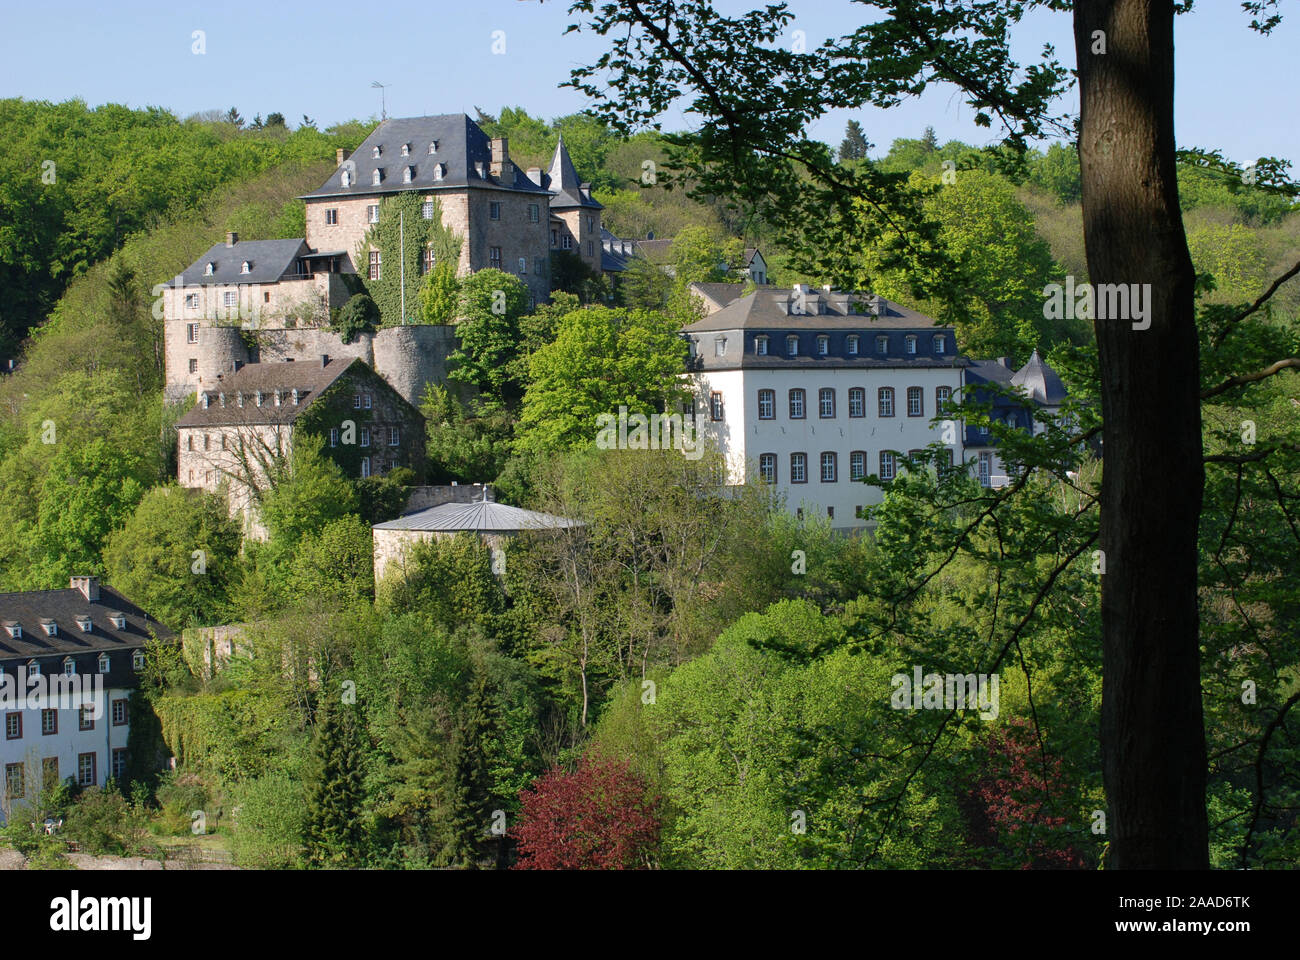 Europa; Deutschland; Nordrhein-Westfalen; Eifel; Schloss; Blankenheim; Bauwerk; Sehenswuerdigkeit; Reise; historisch; historisches; Architektur Stock Photo